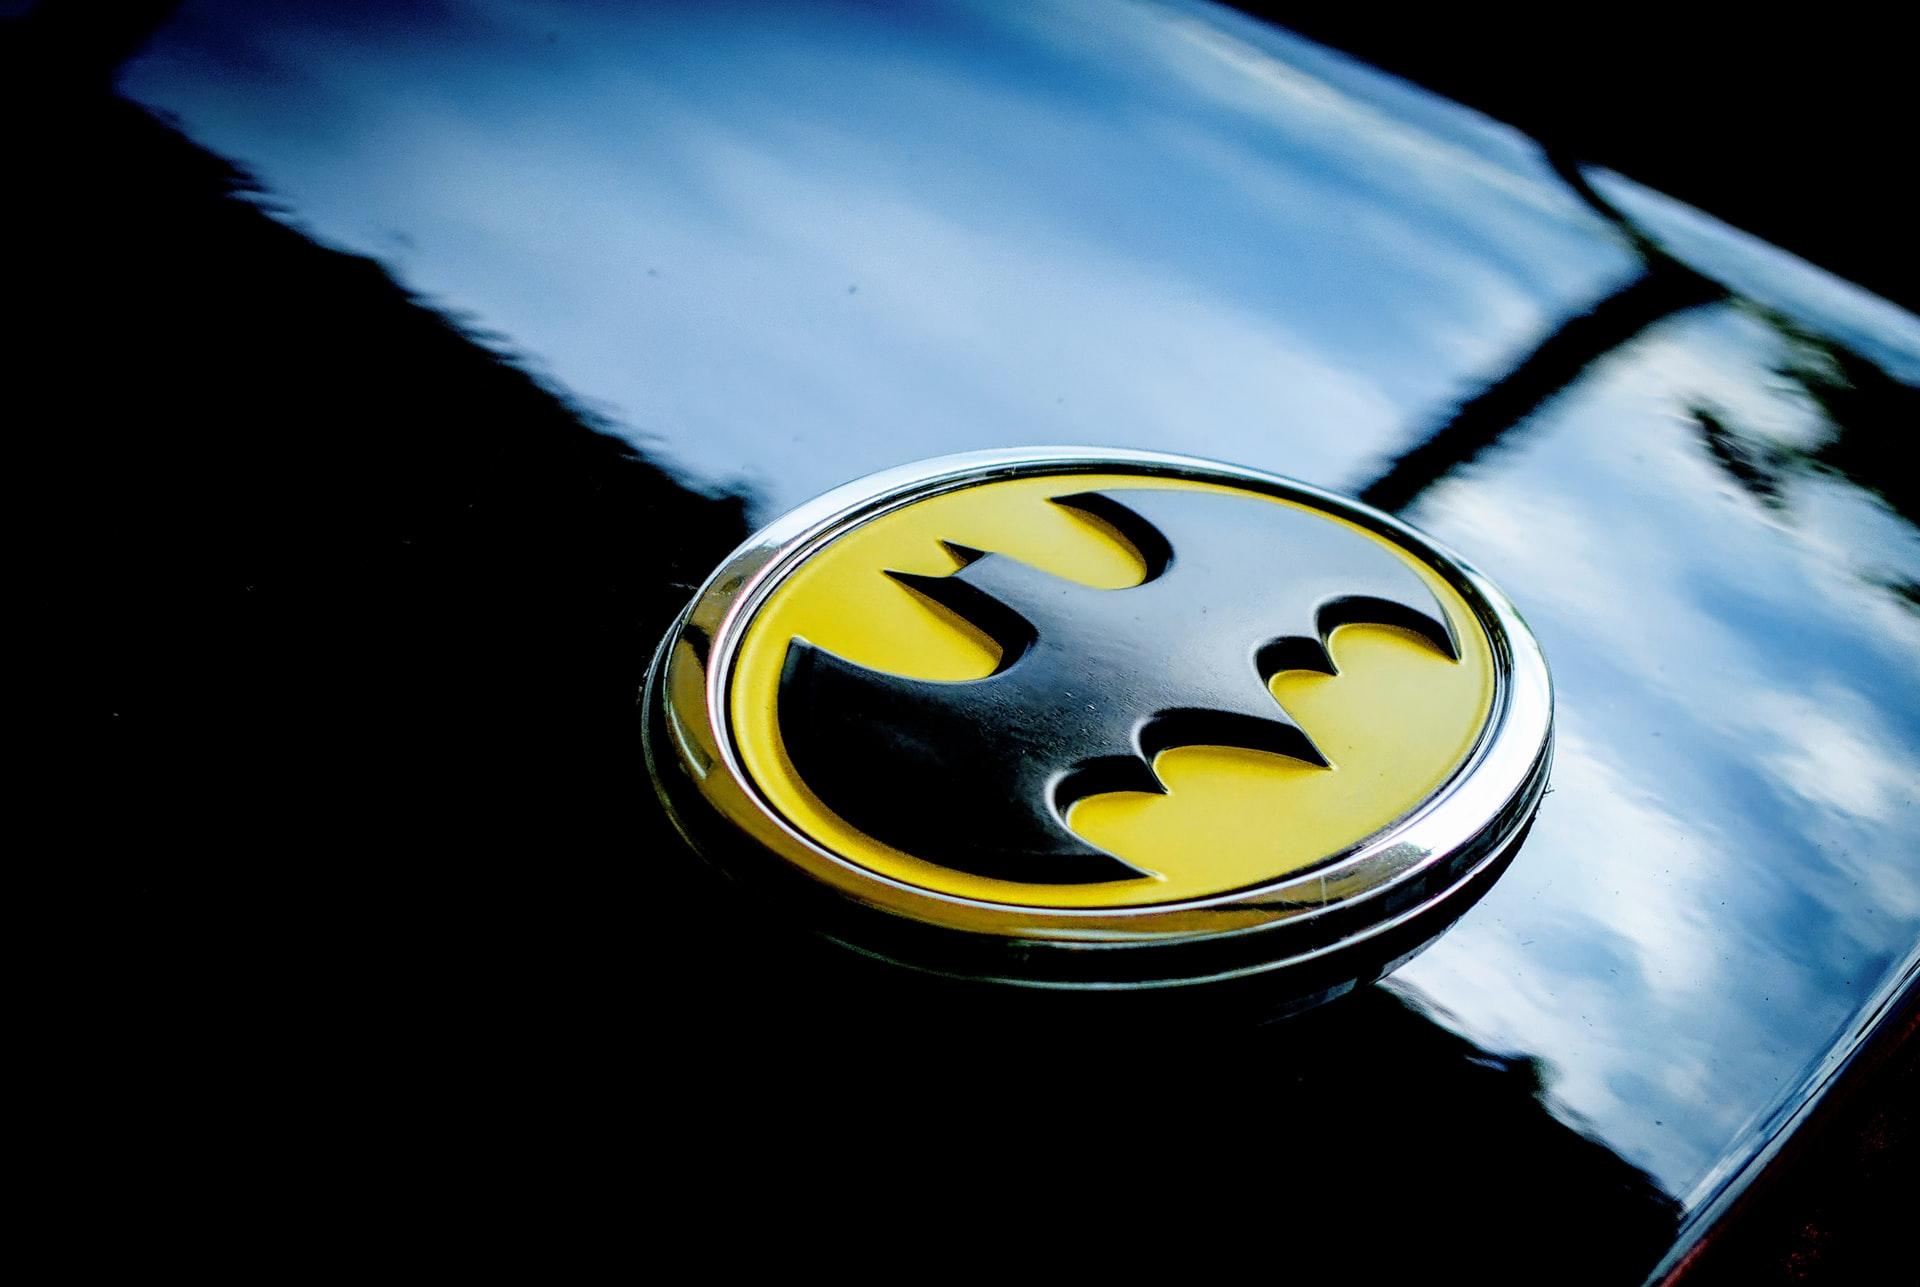 A Batman logo on the hood of a black car.